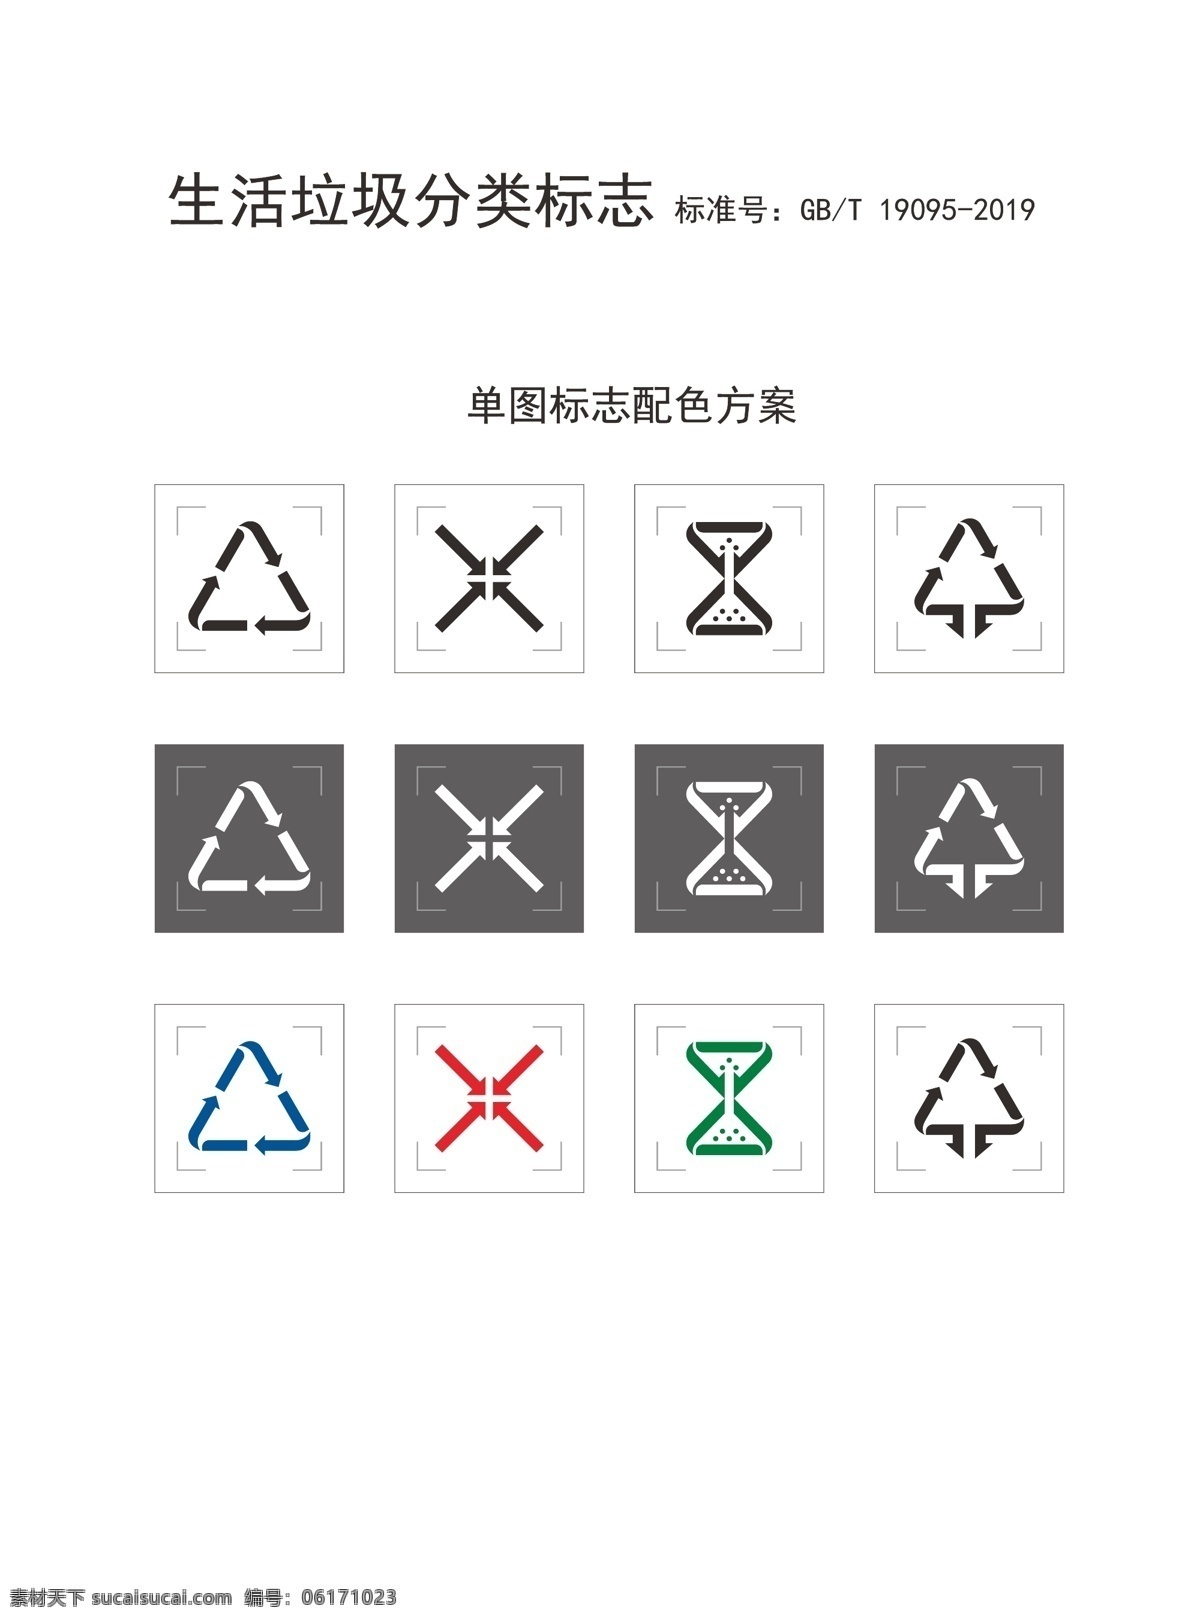 2019 生活 垃圾 分类 标志 垃圾分类 垃圾分类标识 logo 有害垃圾 厨余垃圾 可回收垃圾 其他垃圾 垃圾分类标志 垃圾分类矢量 垃圾分类标准 生活垃圾分类 公共标识标志 标志图标